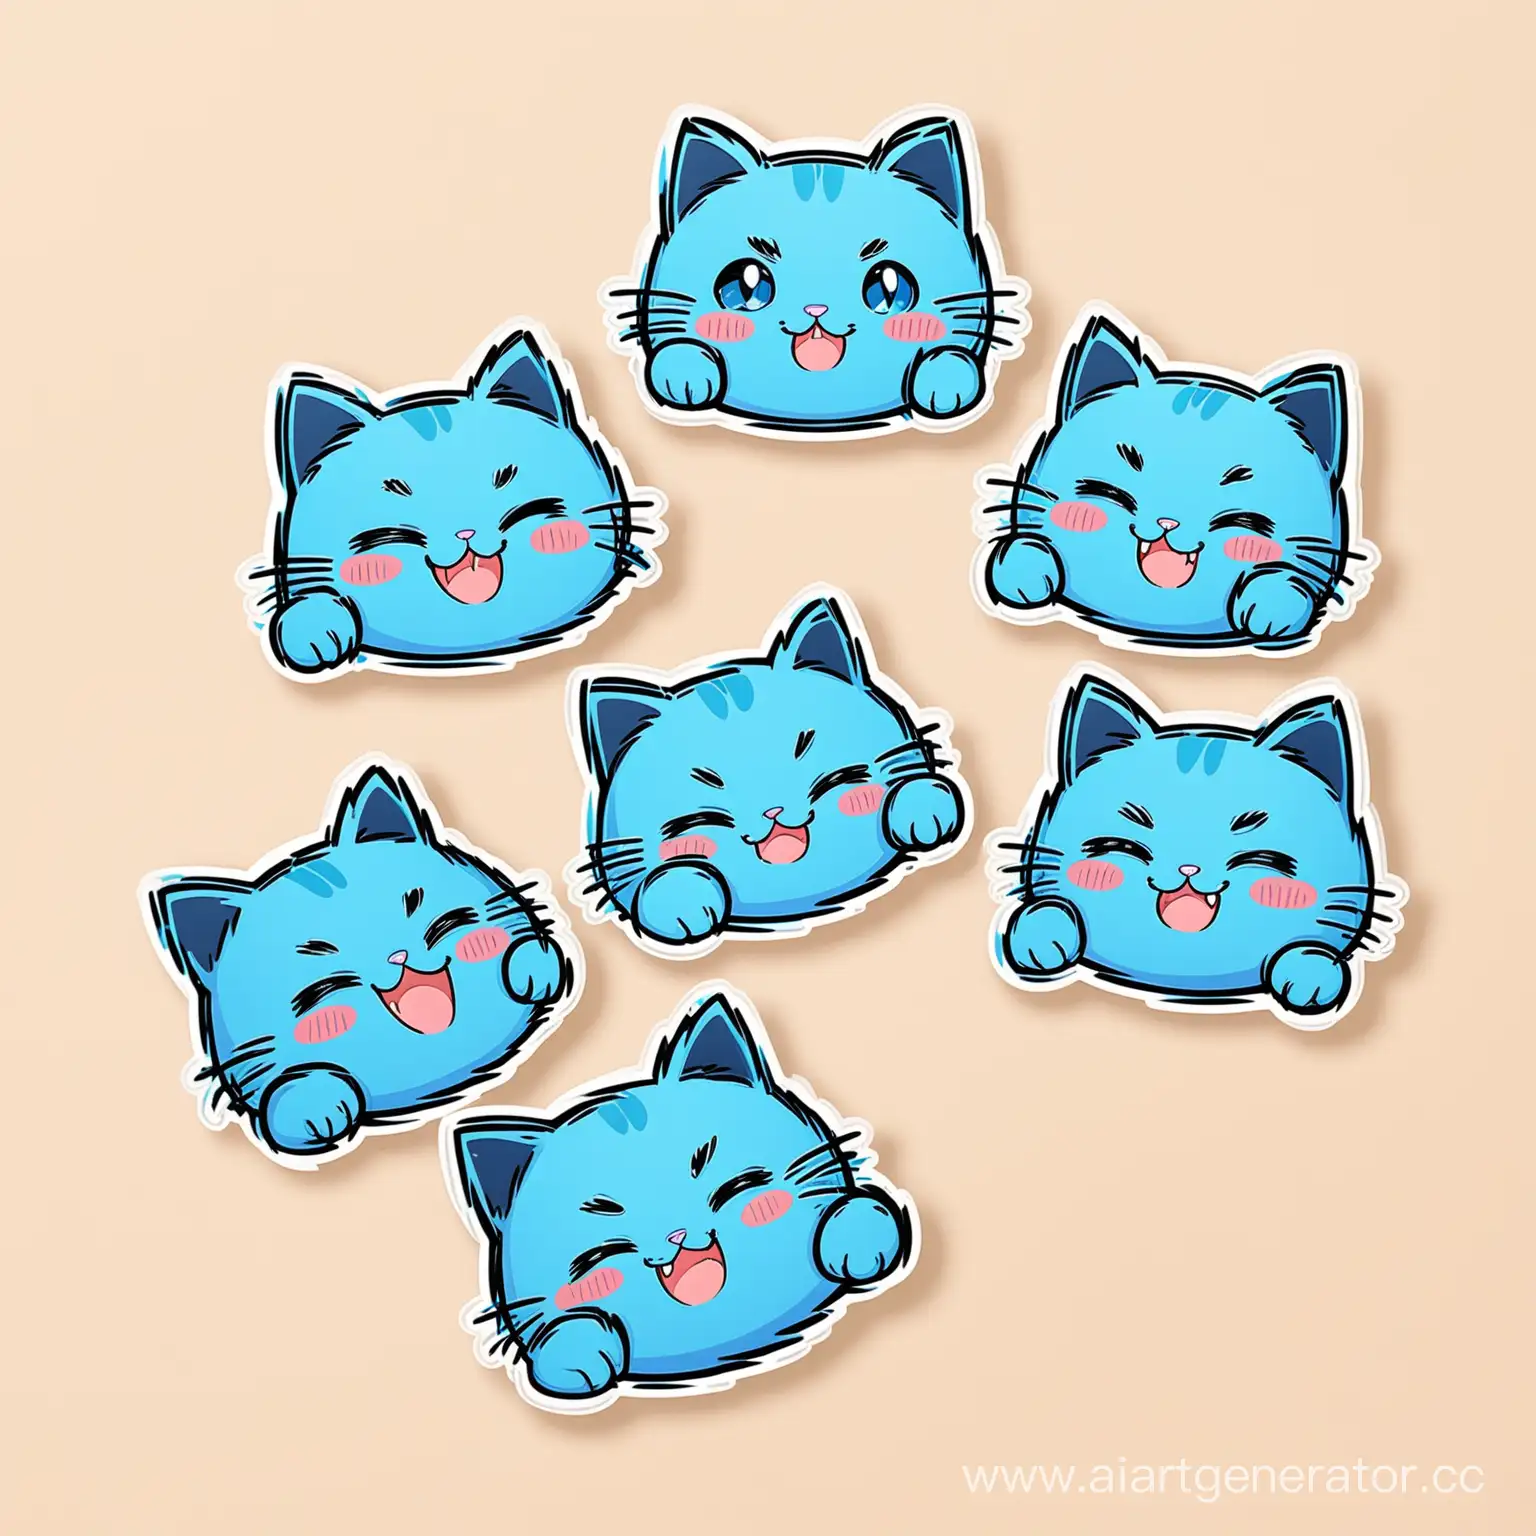 стикеры кота голубого 5 штук с разными эмоциями и действиями